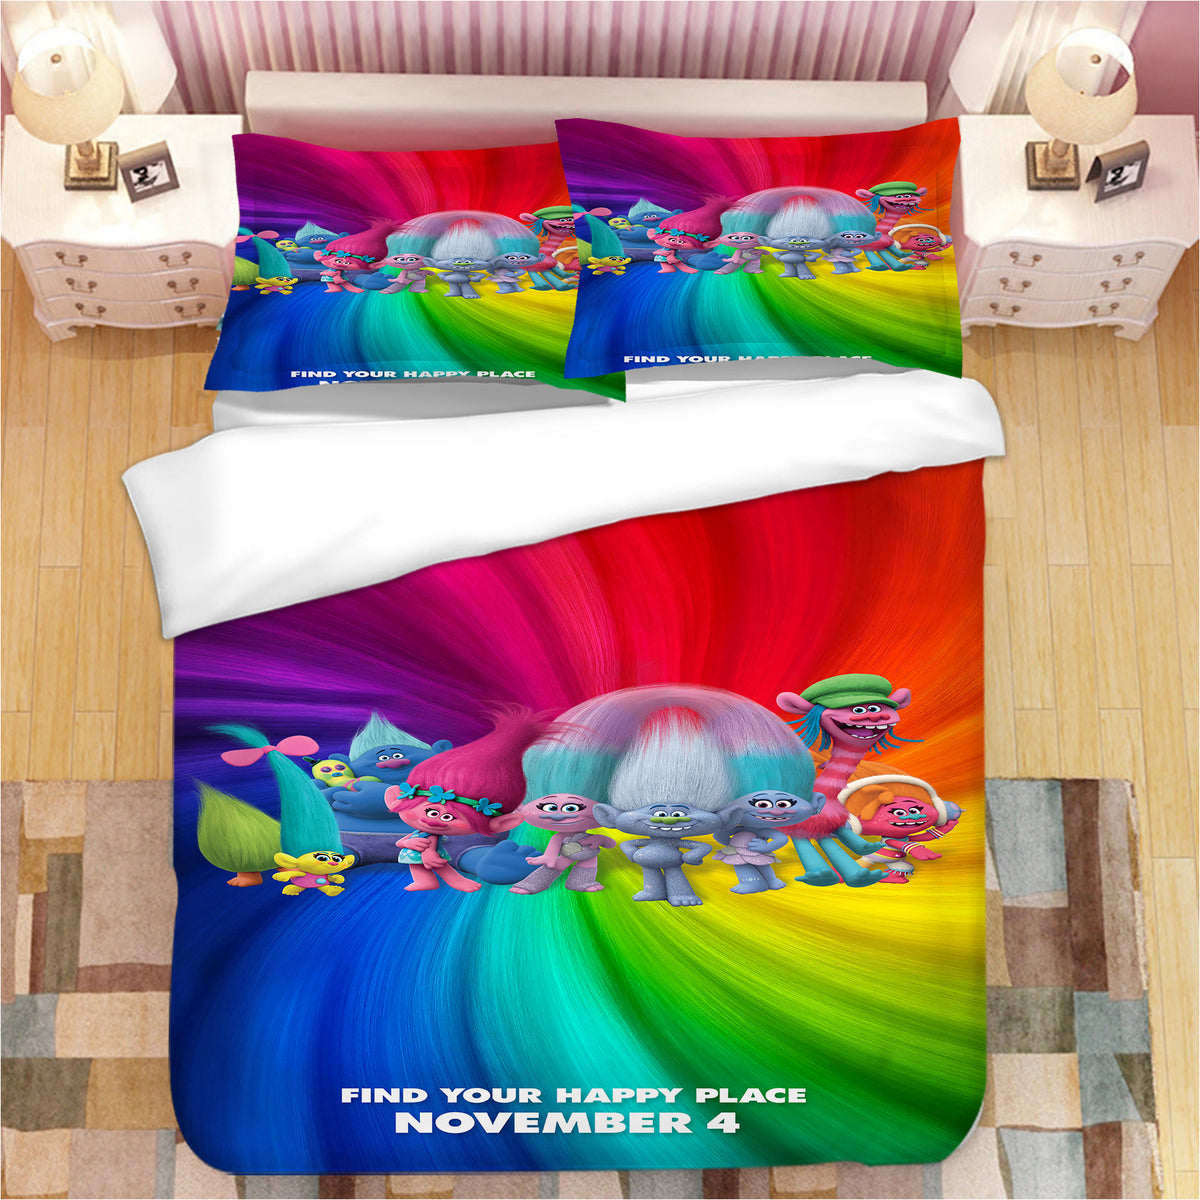 Trolls Poppy #9 Duvet Cover Quilt Cover Pillowcase Bedding Set Bed Linen Home Bedroom Decor